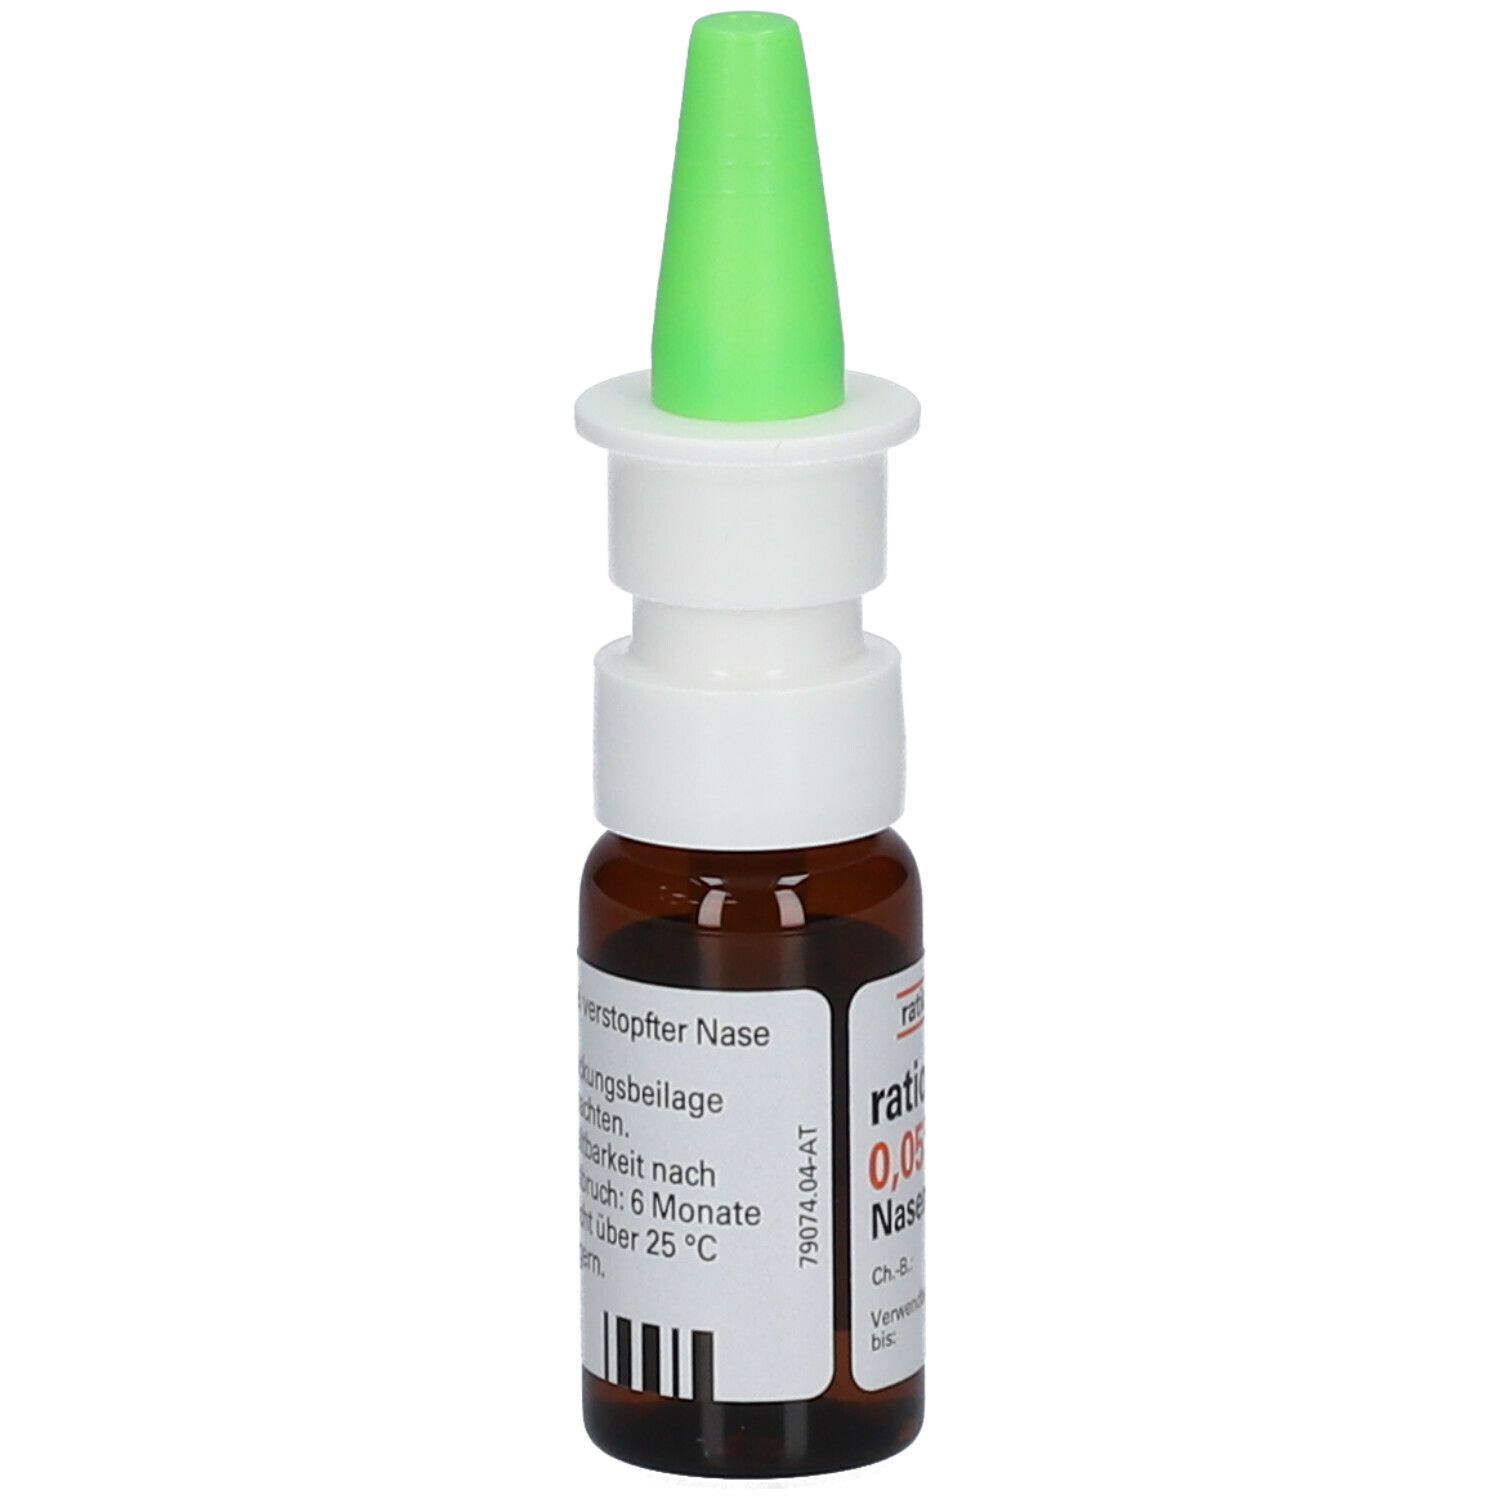 ratioSoft® 0,05% Nasenspray für Kinder